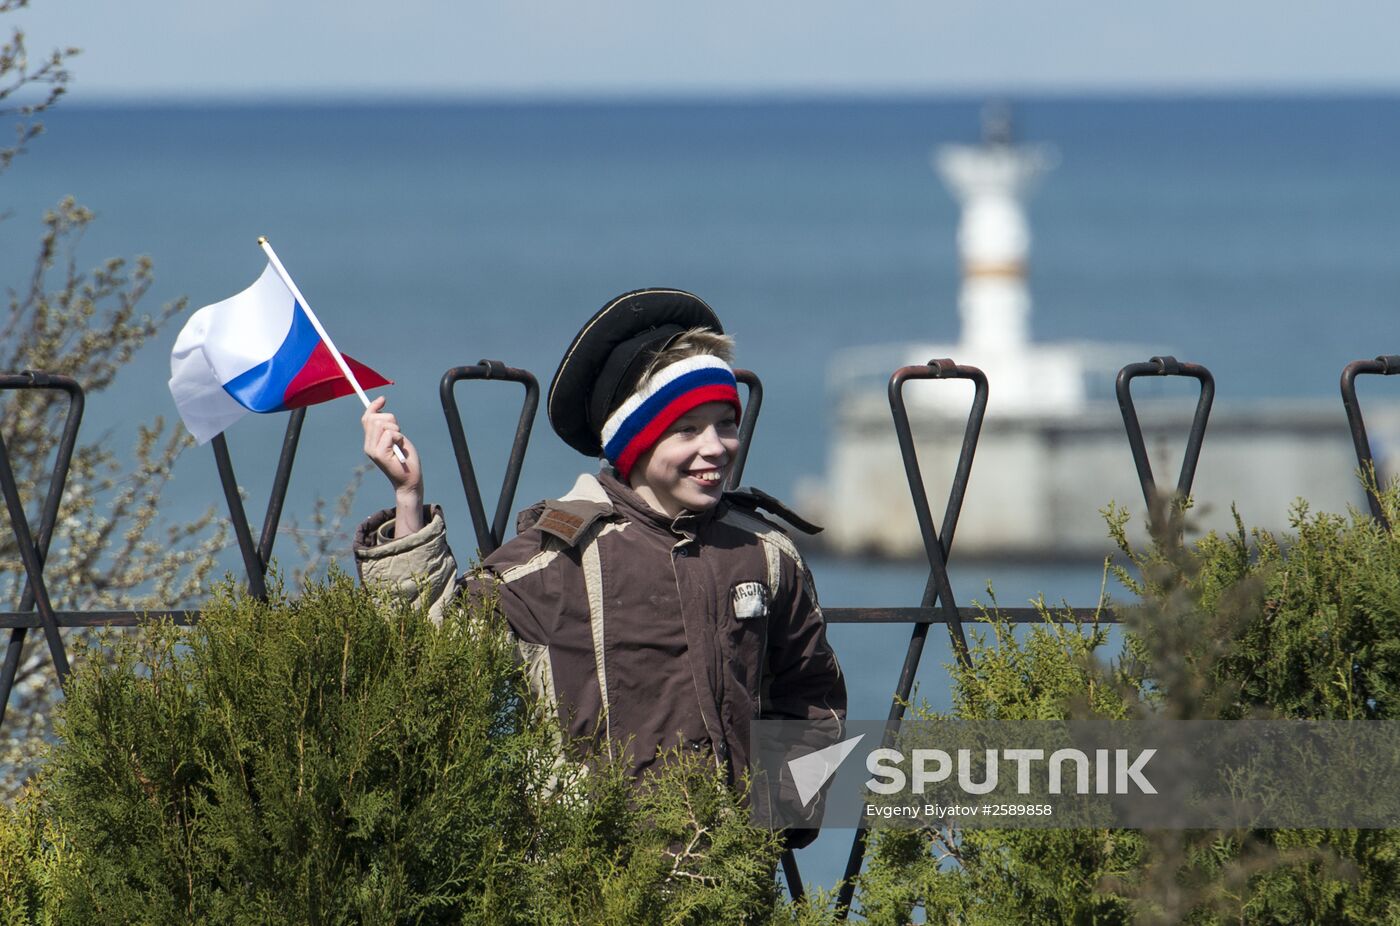 Crimean Spring anniversary in Crimea